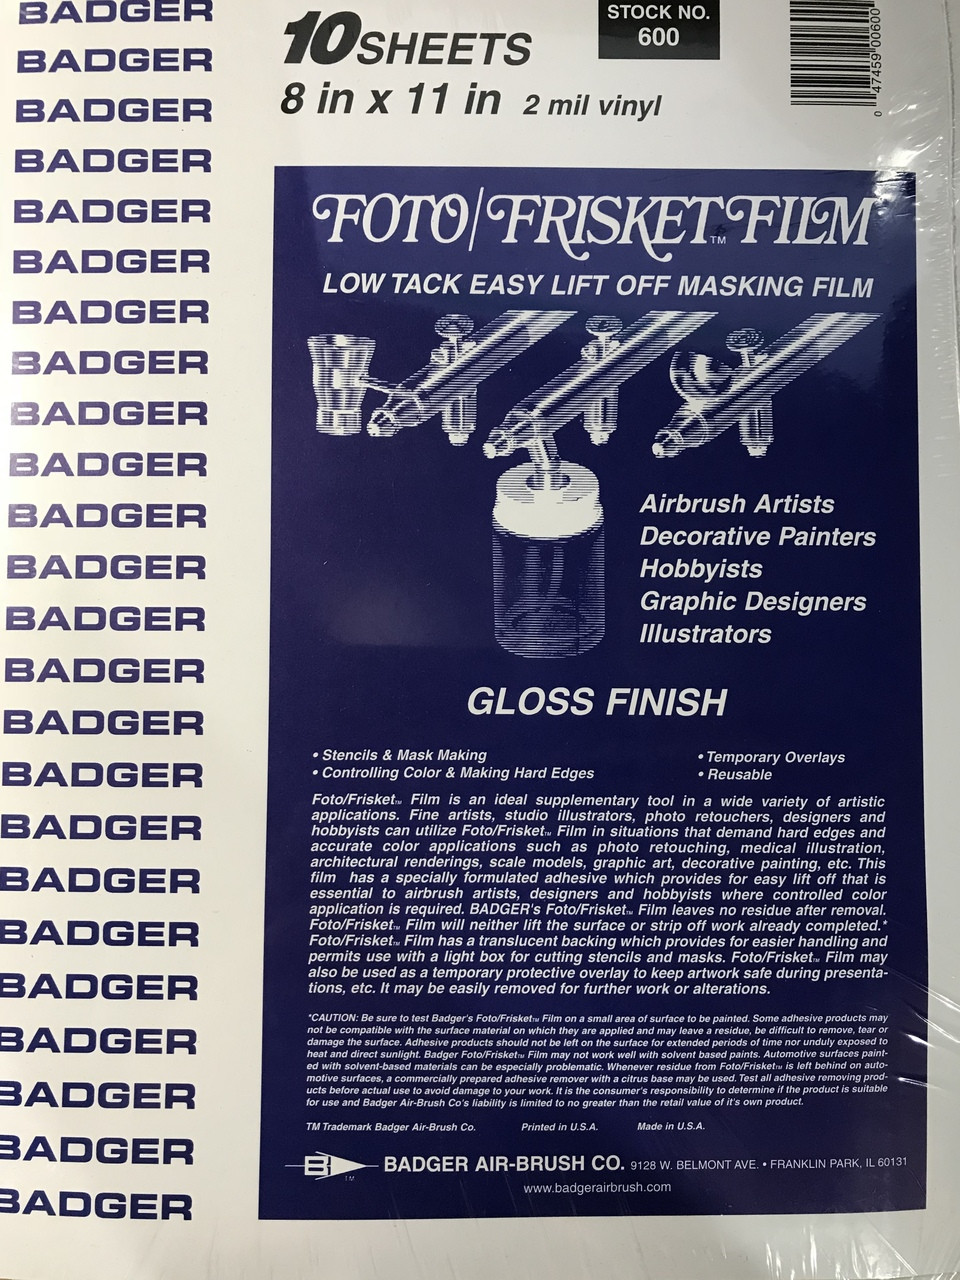 Badger Foto/Frisket film Gloss finish - Cedar Run Outdoors